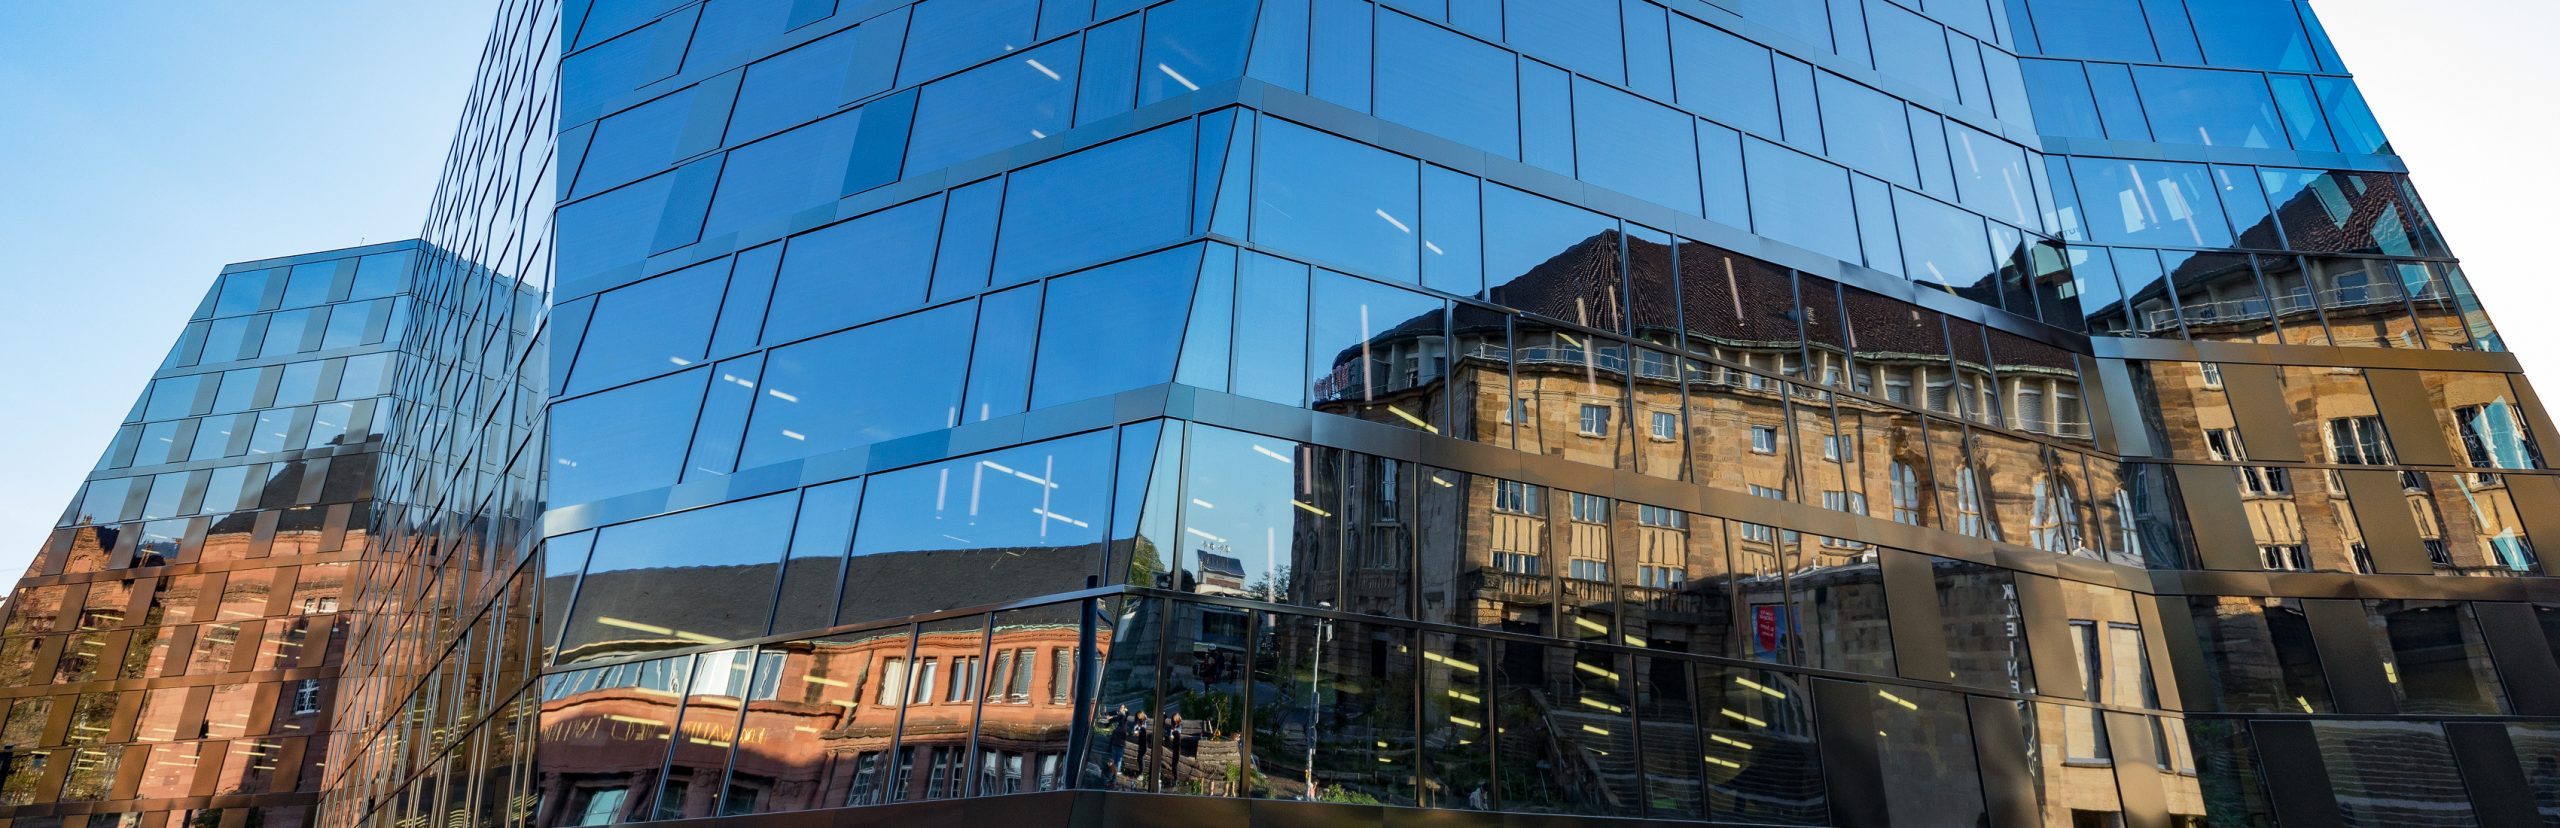 Spiegelung der Alten Universität und des Stadttheaters an der Außenfassade der neuen Universitätsbibliothek.